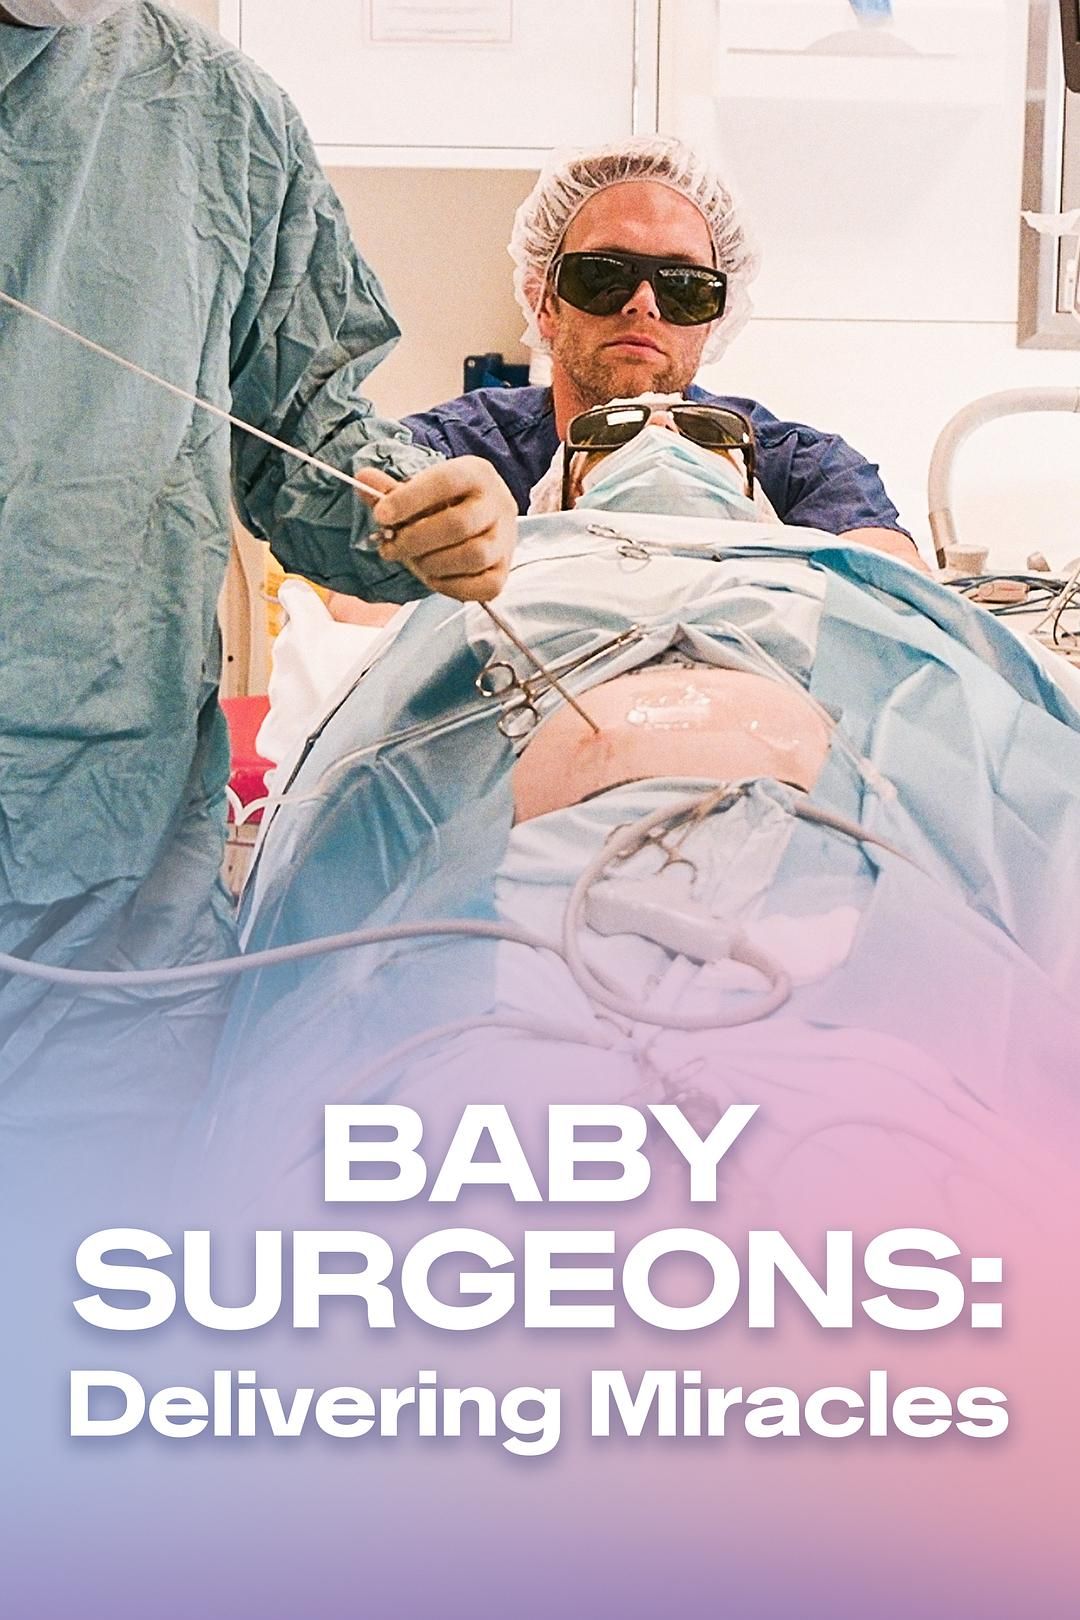 婴儿外科医生实录 第一季 全3集 | 4K | 类型:纪录片 [内嵌中英双字 B站水印] - 爱看电影爱看美剧